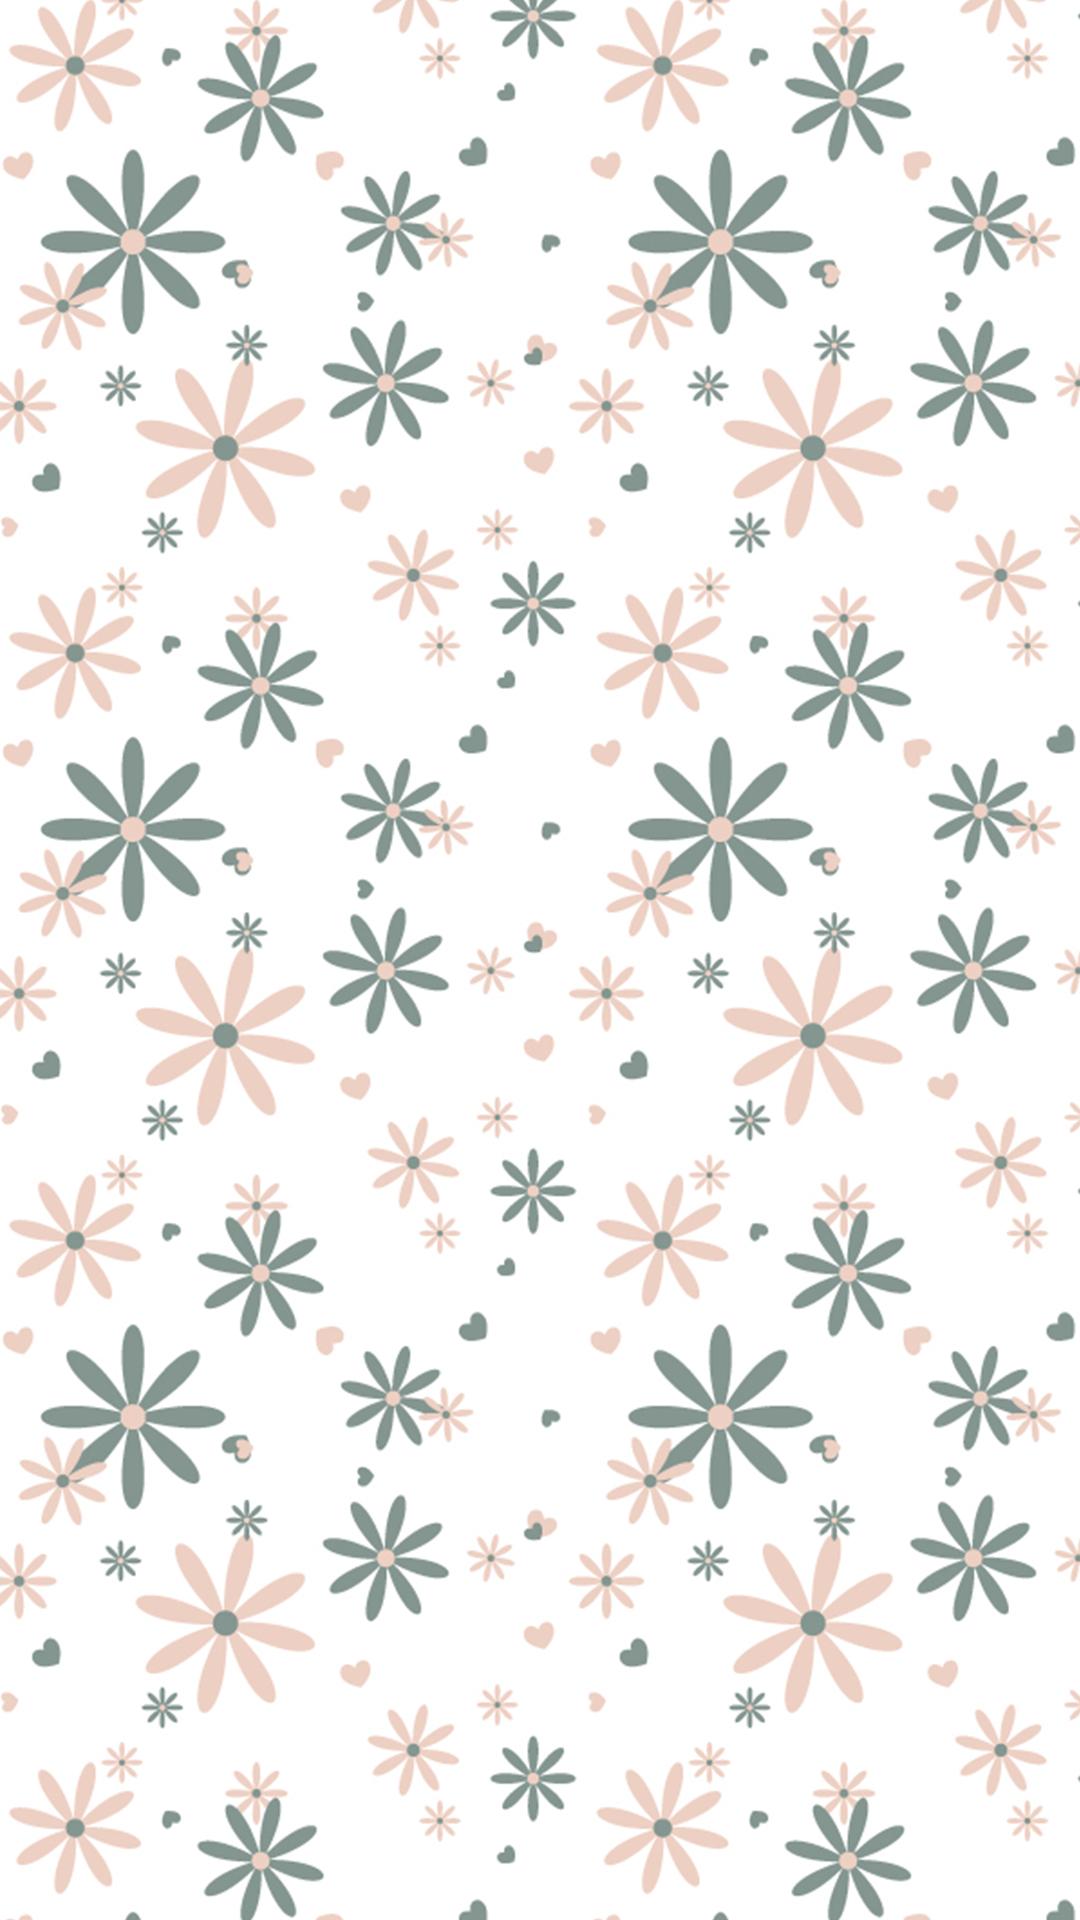 Free HD Flower Pattern Phone Wallpaper.4554